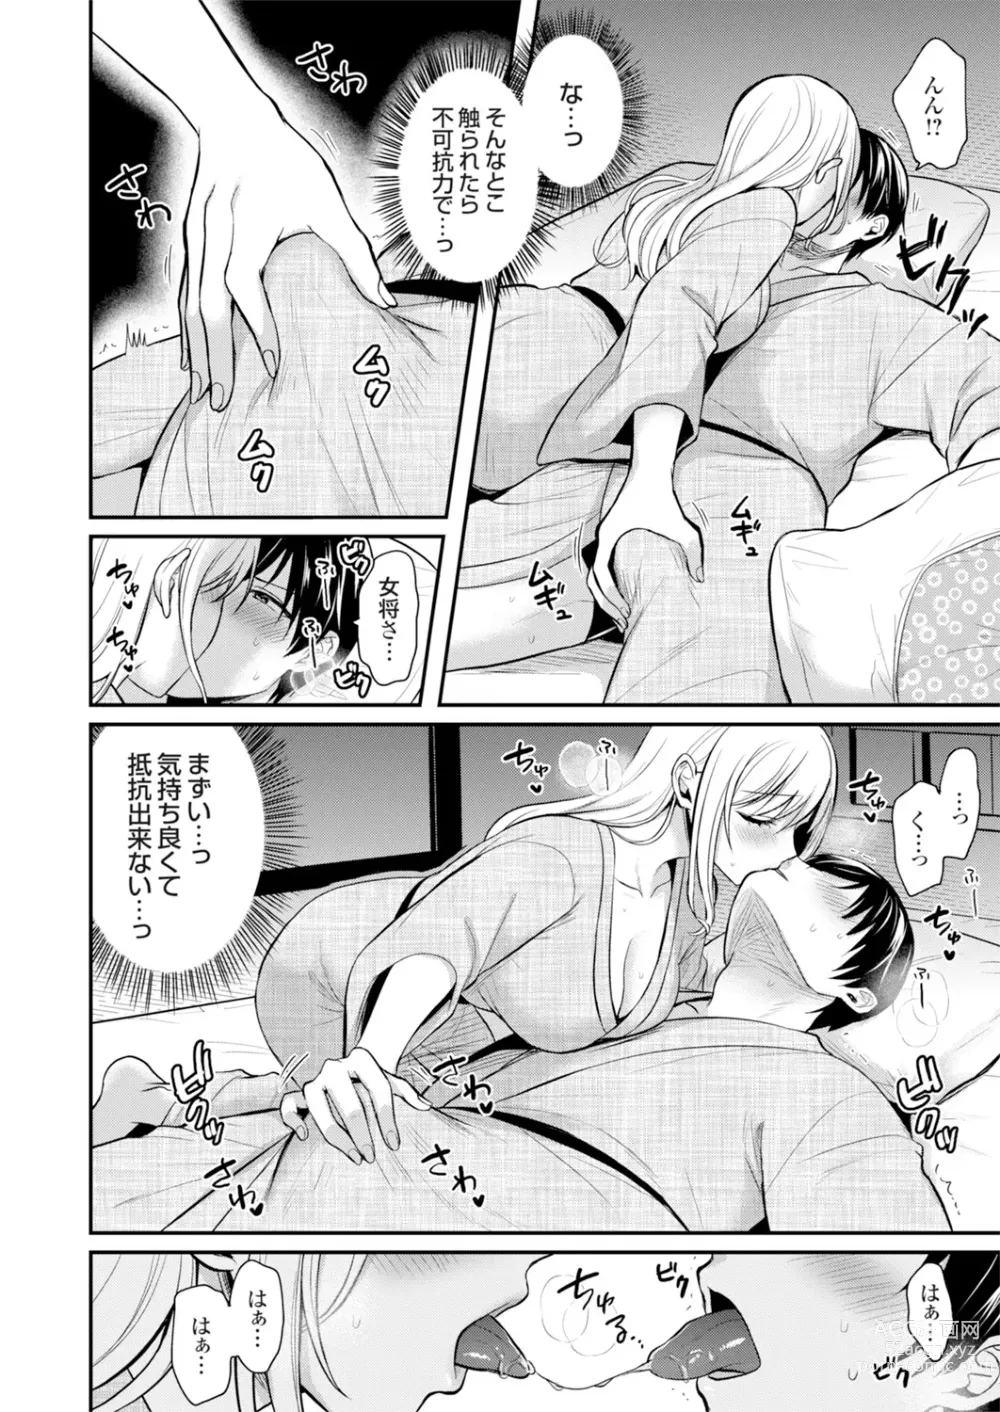 Page 14 of manga Ore no Natsuyasumi wa Gal no Wakaokami to Beit Seikatsu!?